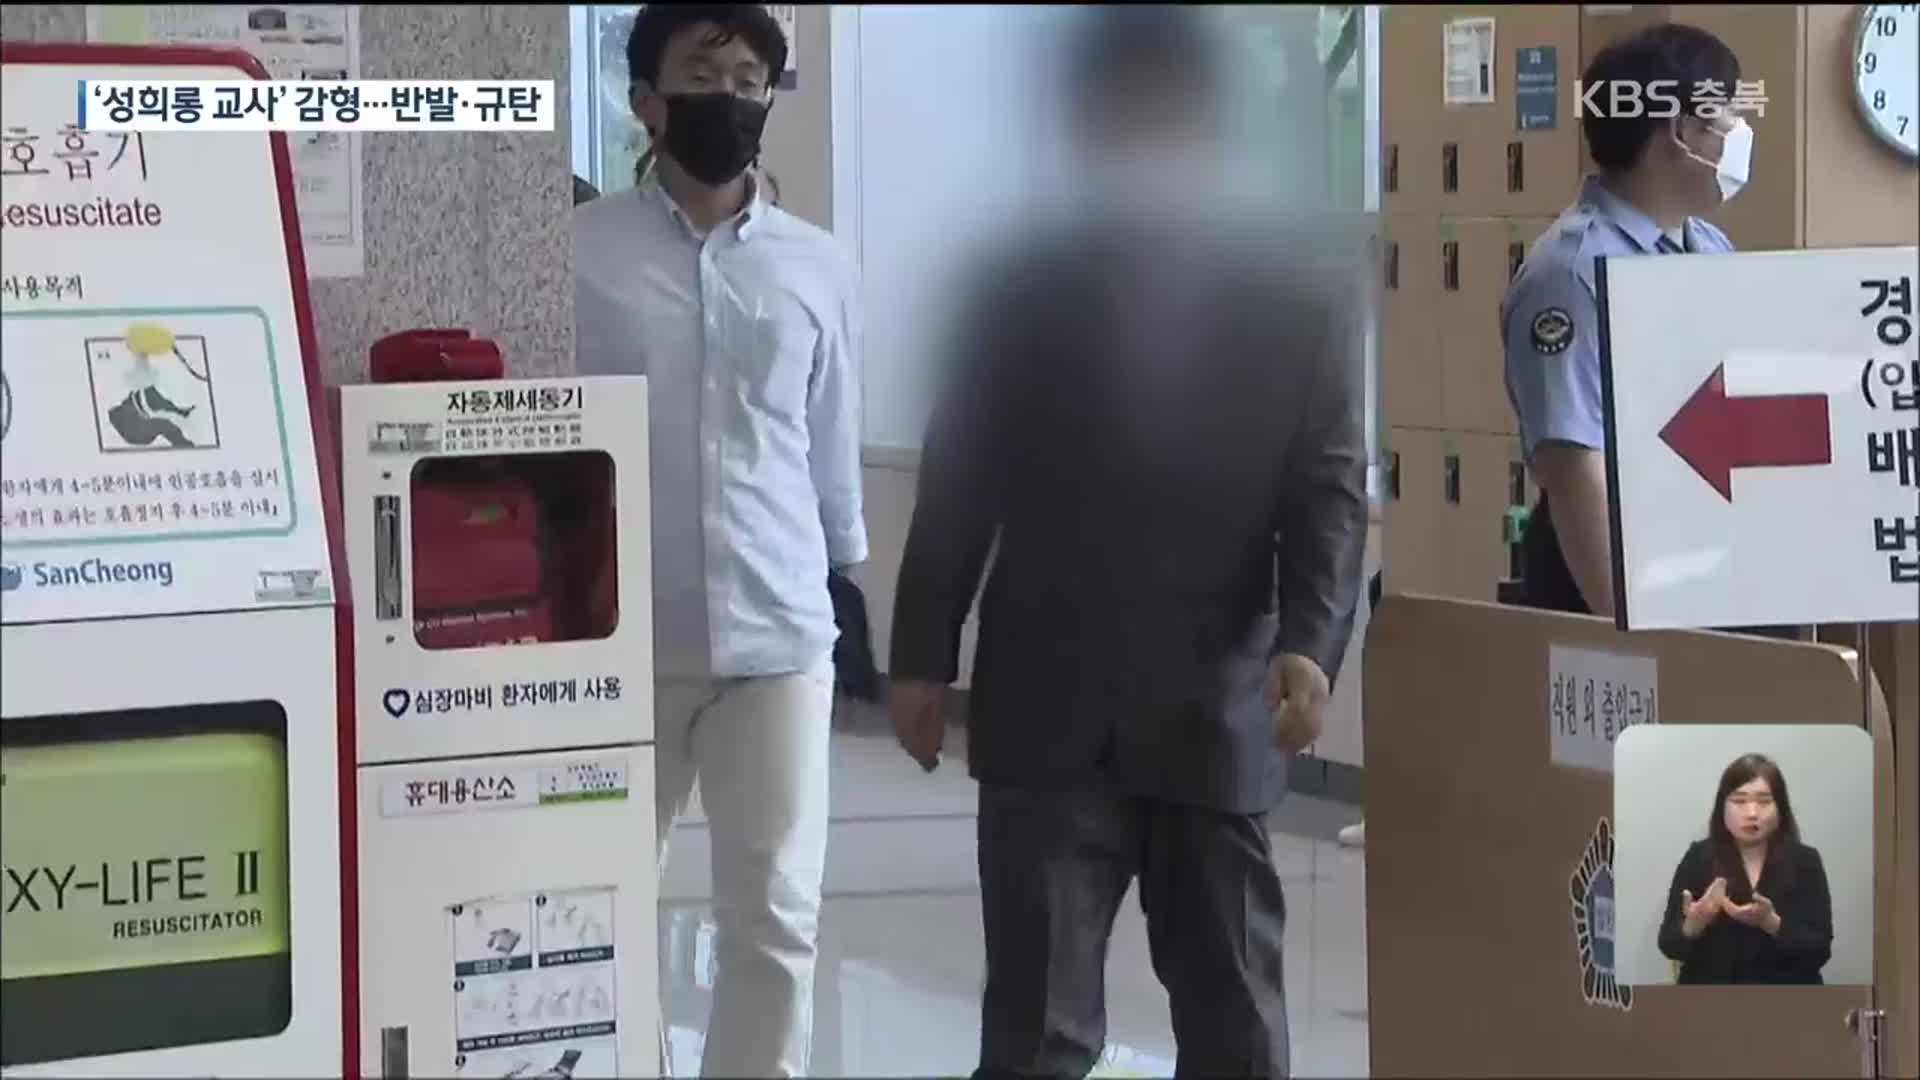 전국 ‘스쿨미투’ 촉발 사건, 항소심 일부 감형